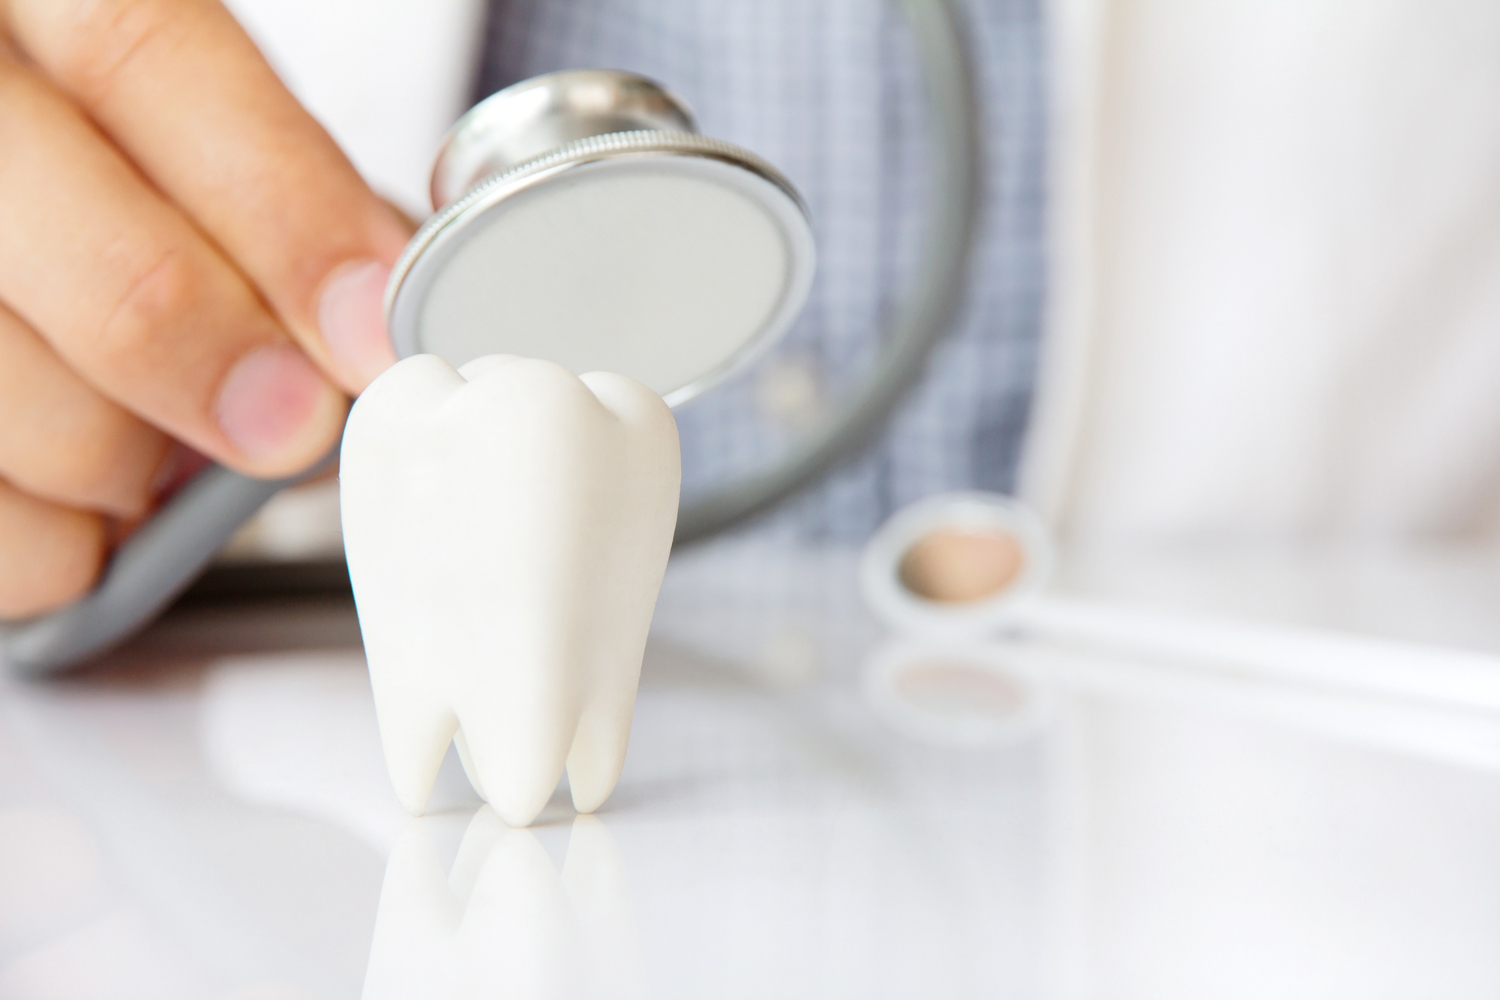 למה כדאי ואפשר לצפות – מדריך לציפויי שיניים